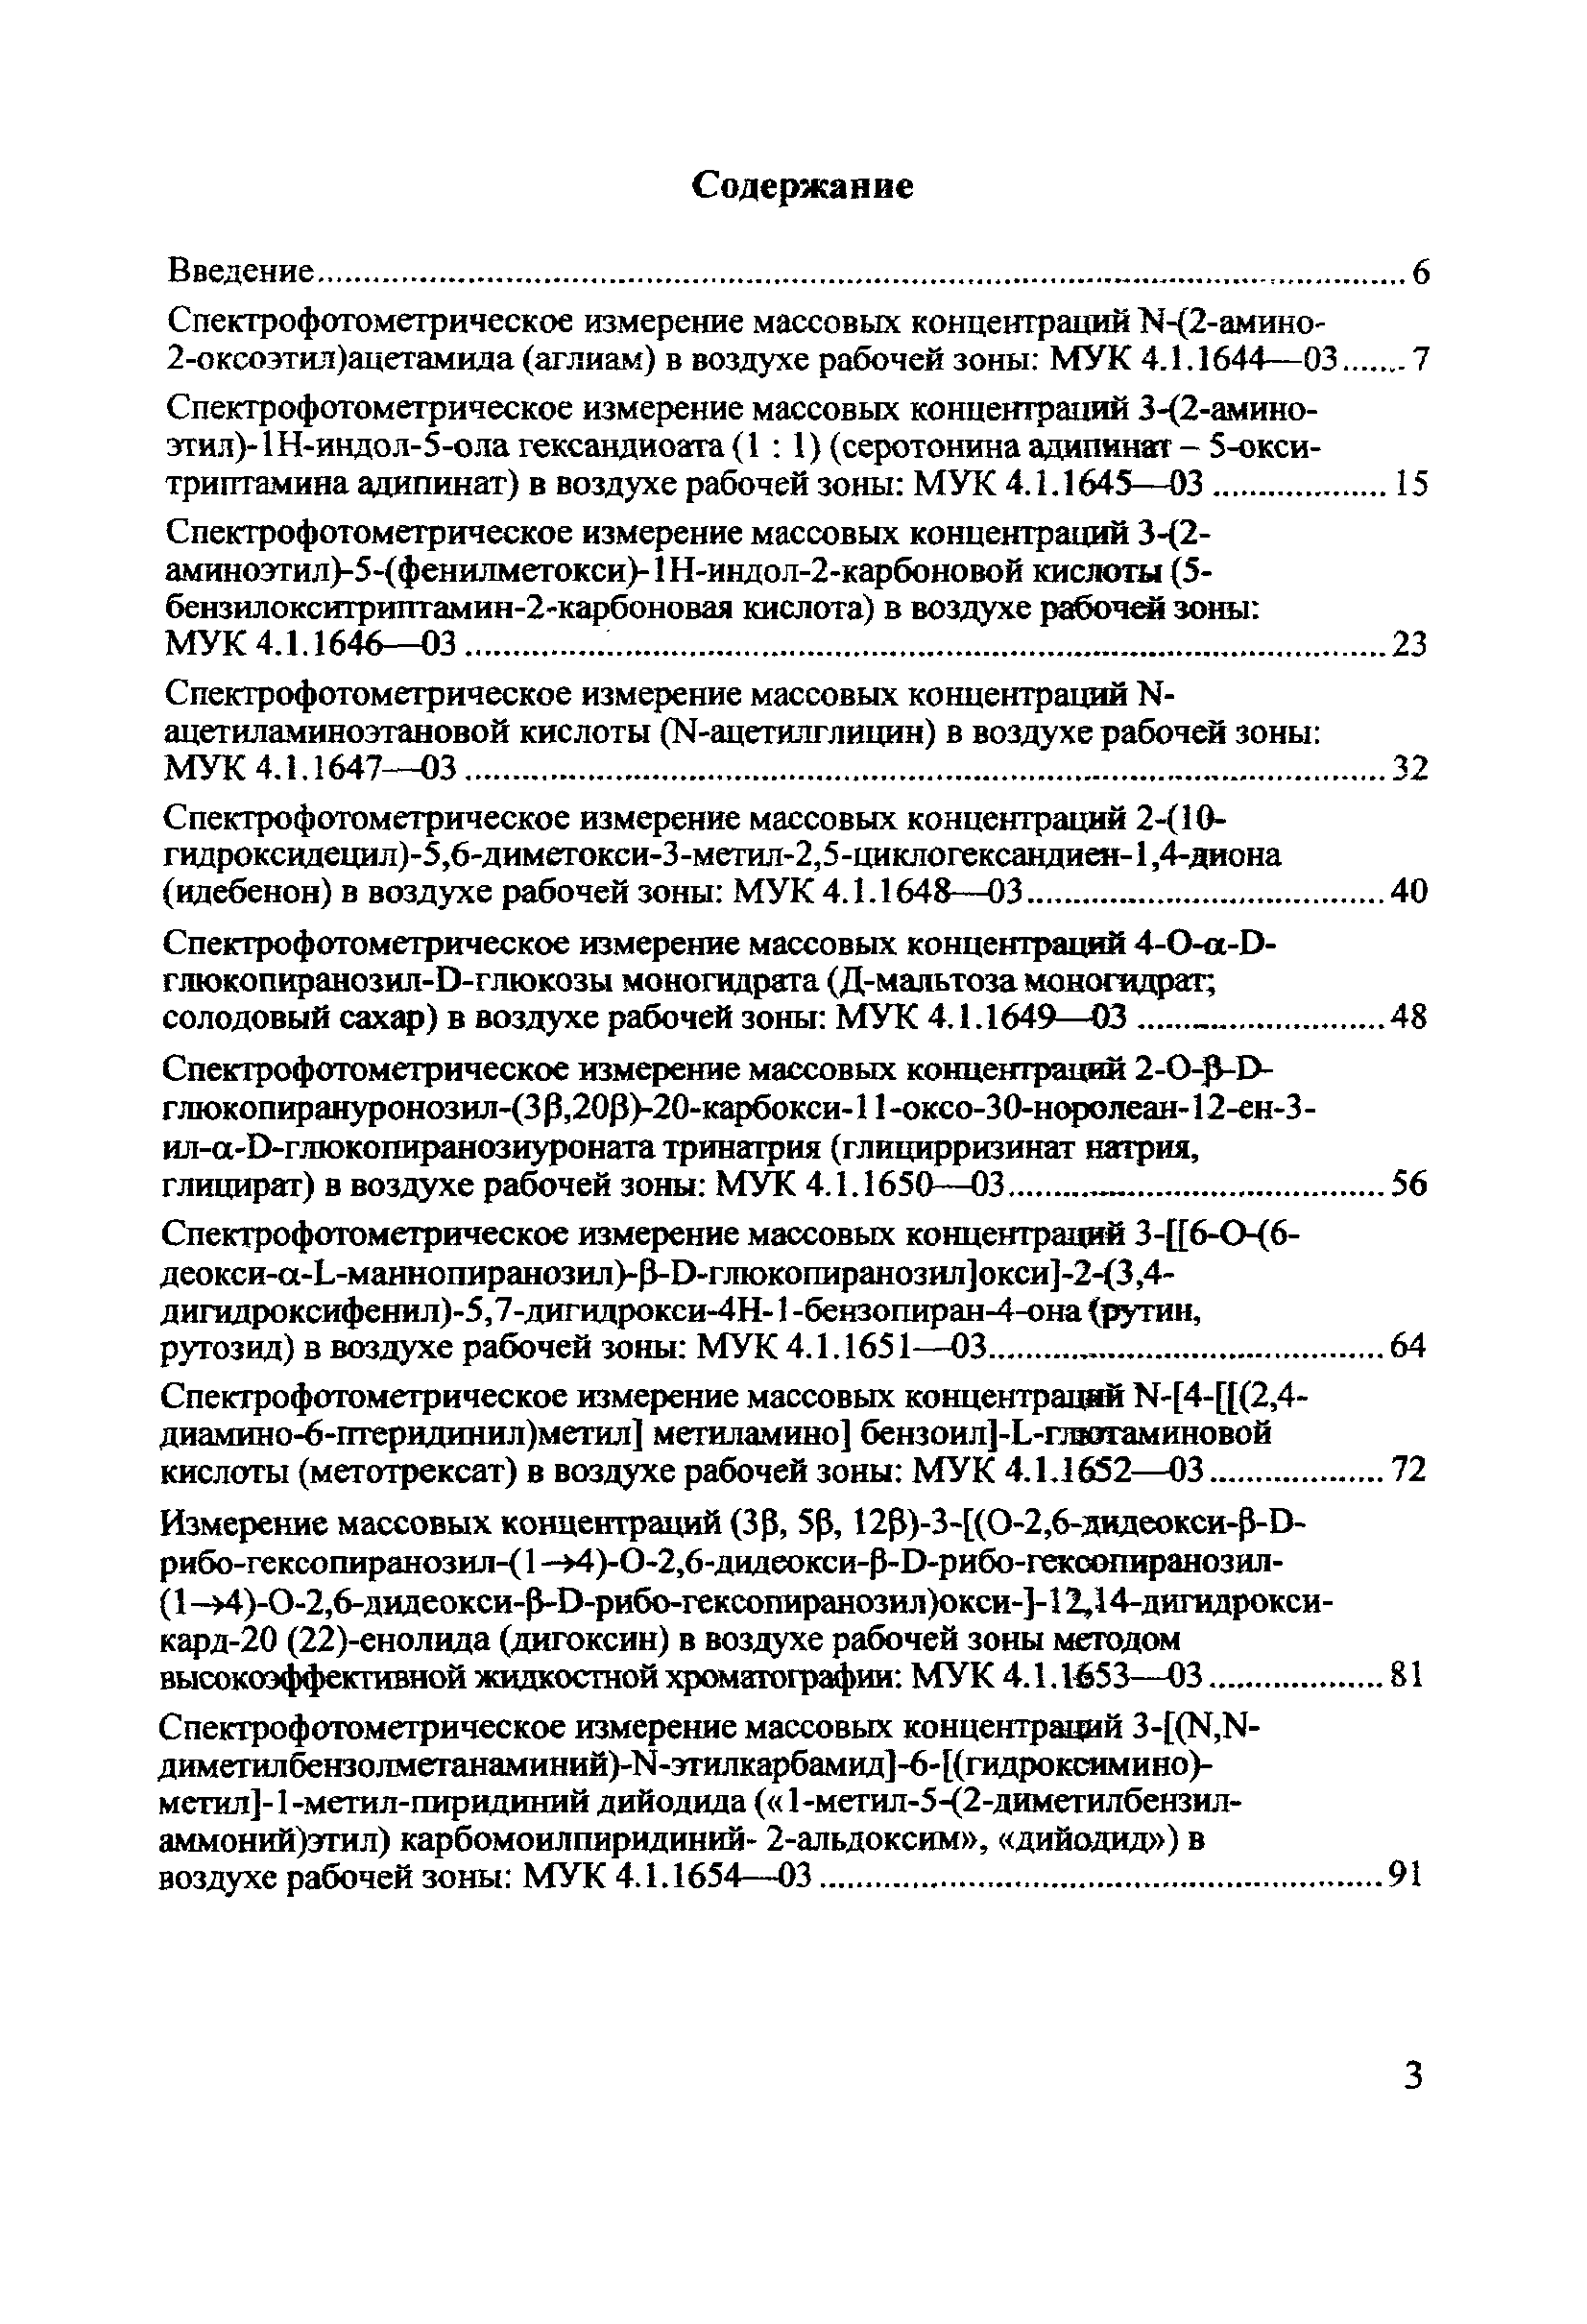 МУК 4.1.1655-03